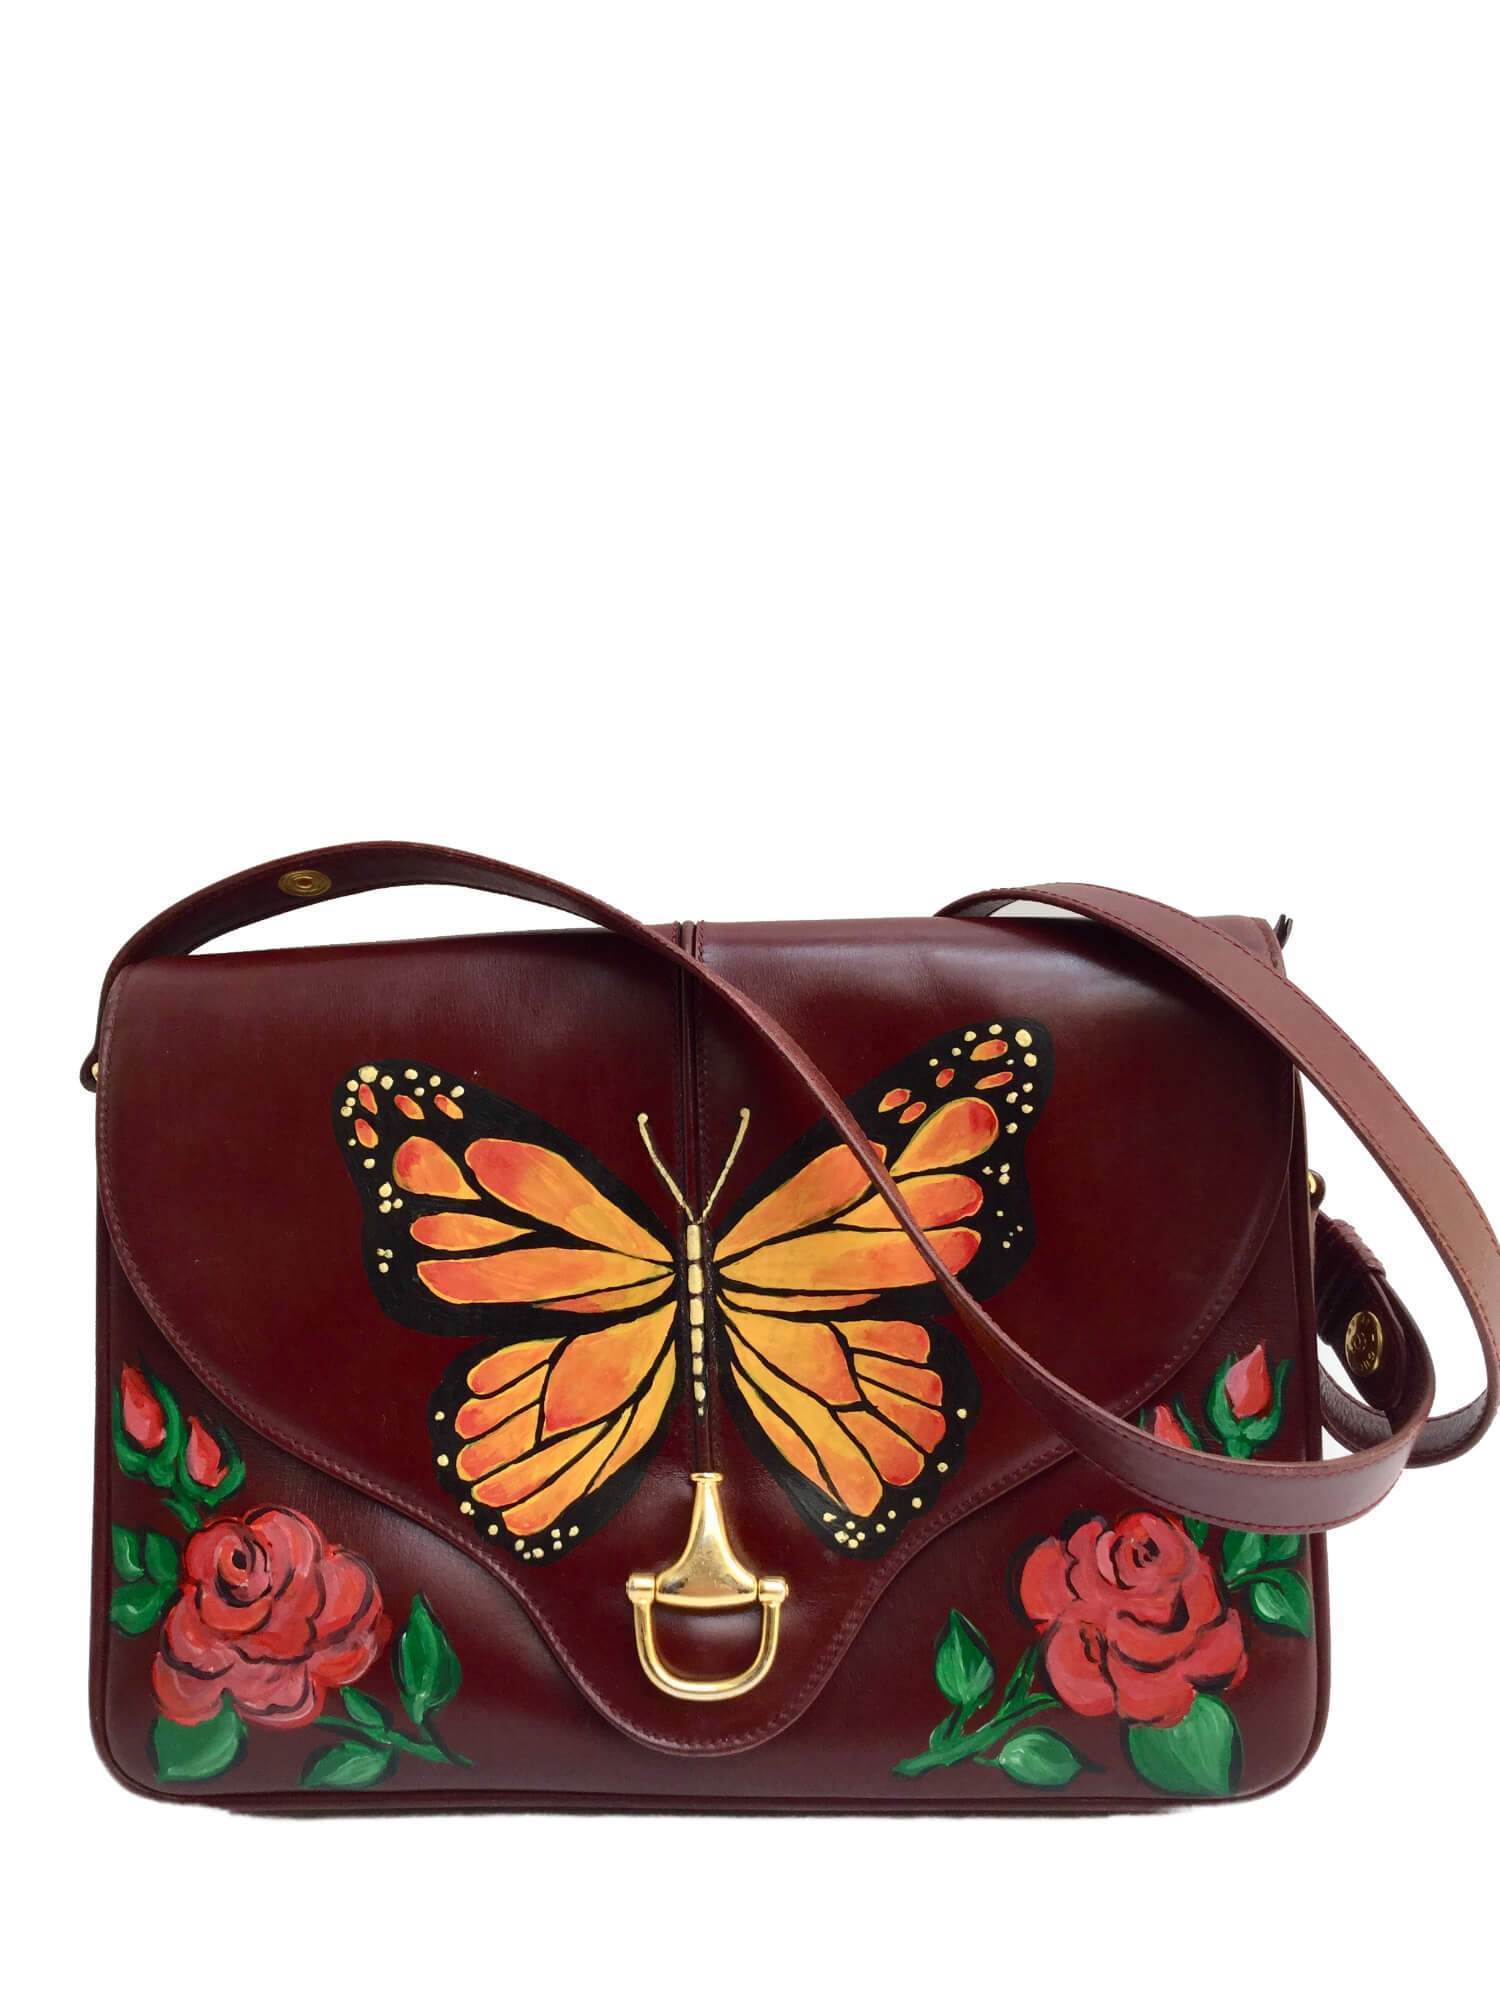 Burgundy Leather Flap Bag Floral Butterfly Gold Horsebit-designer resale